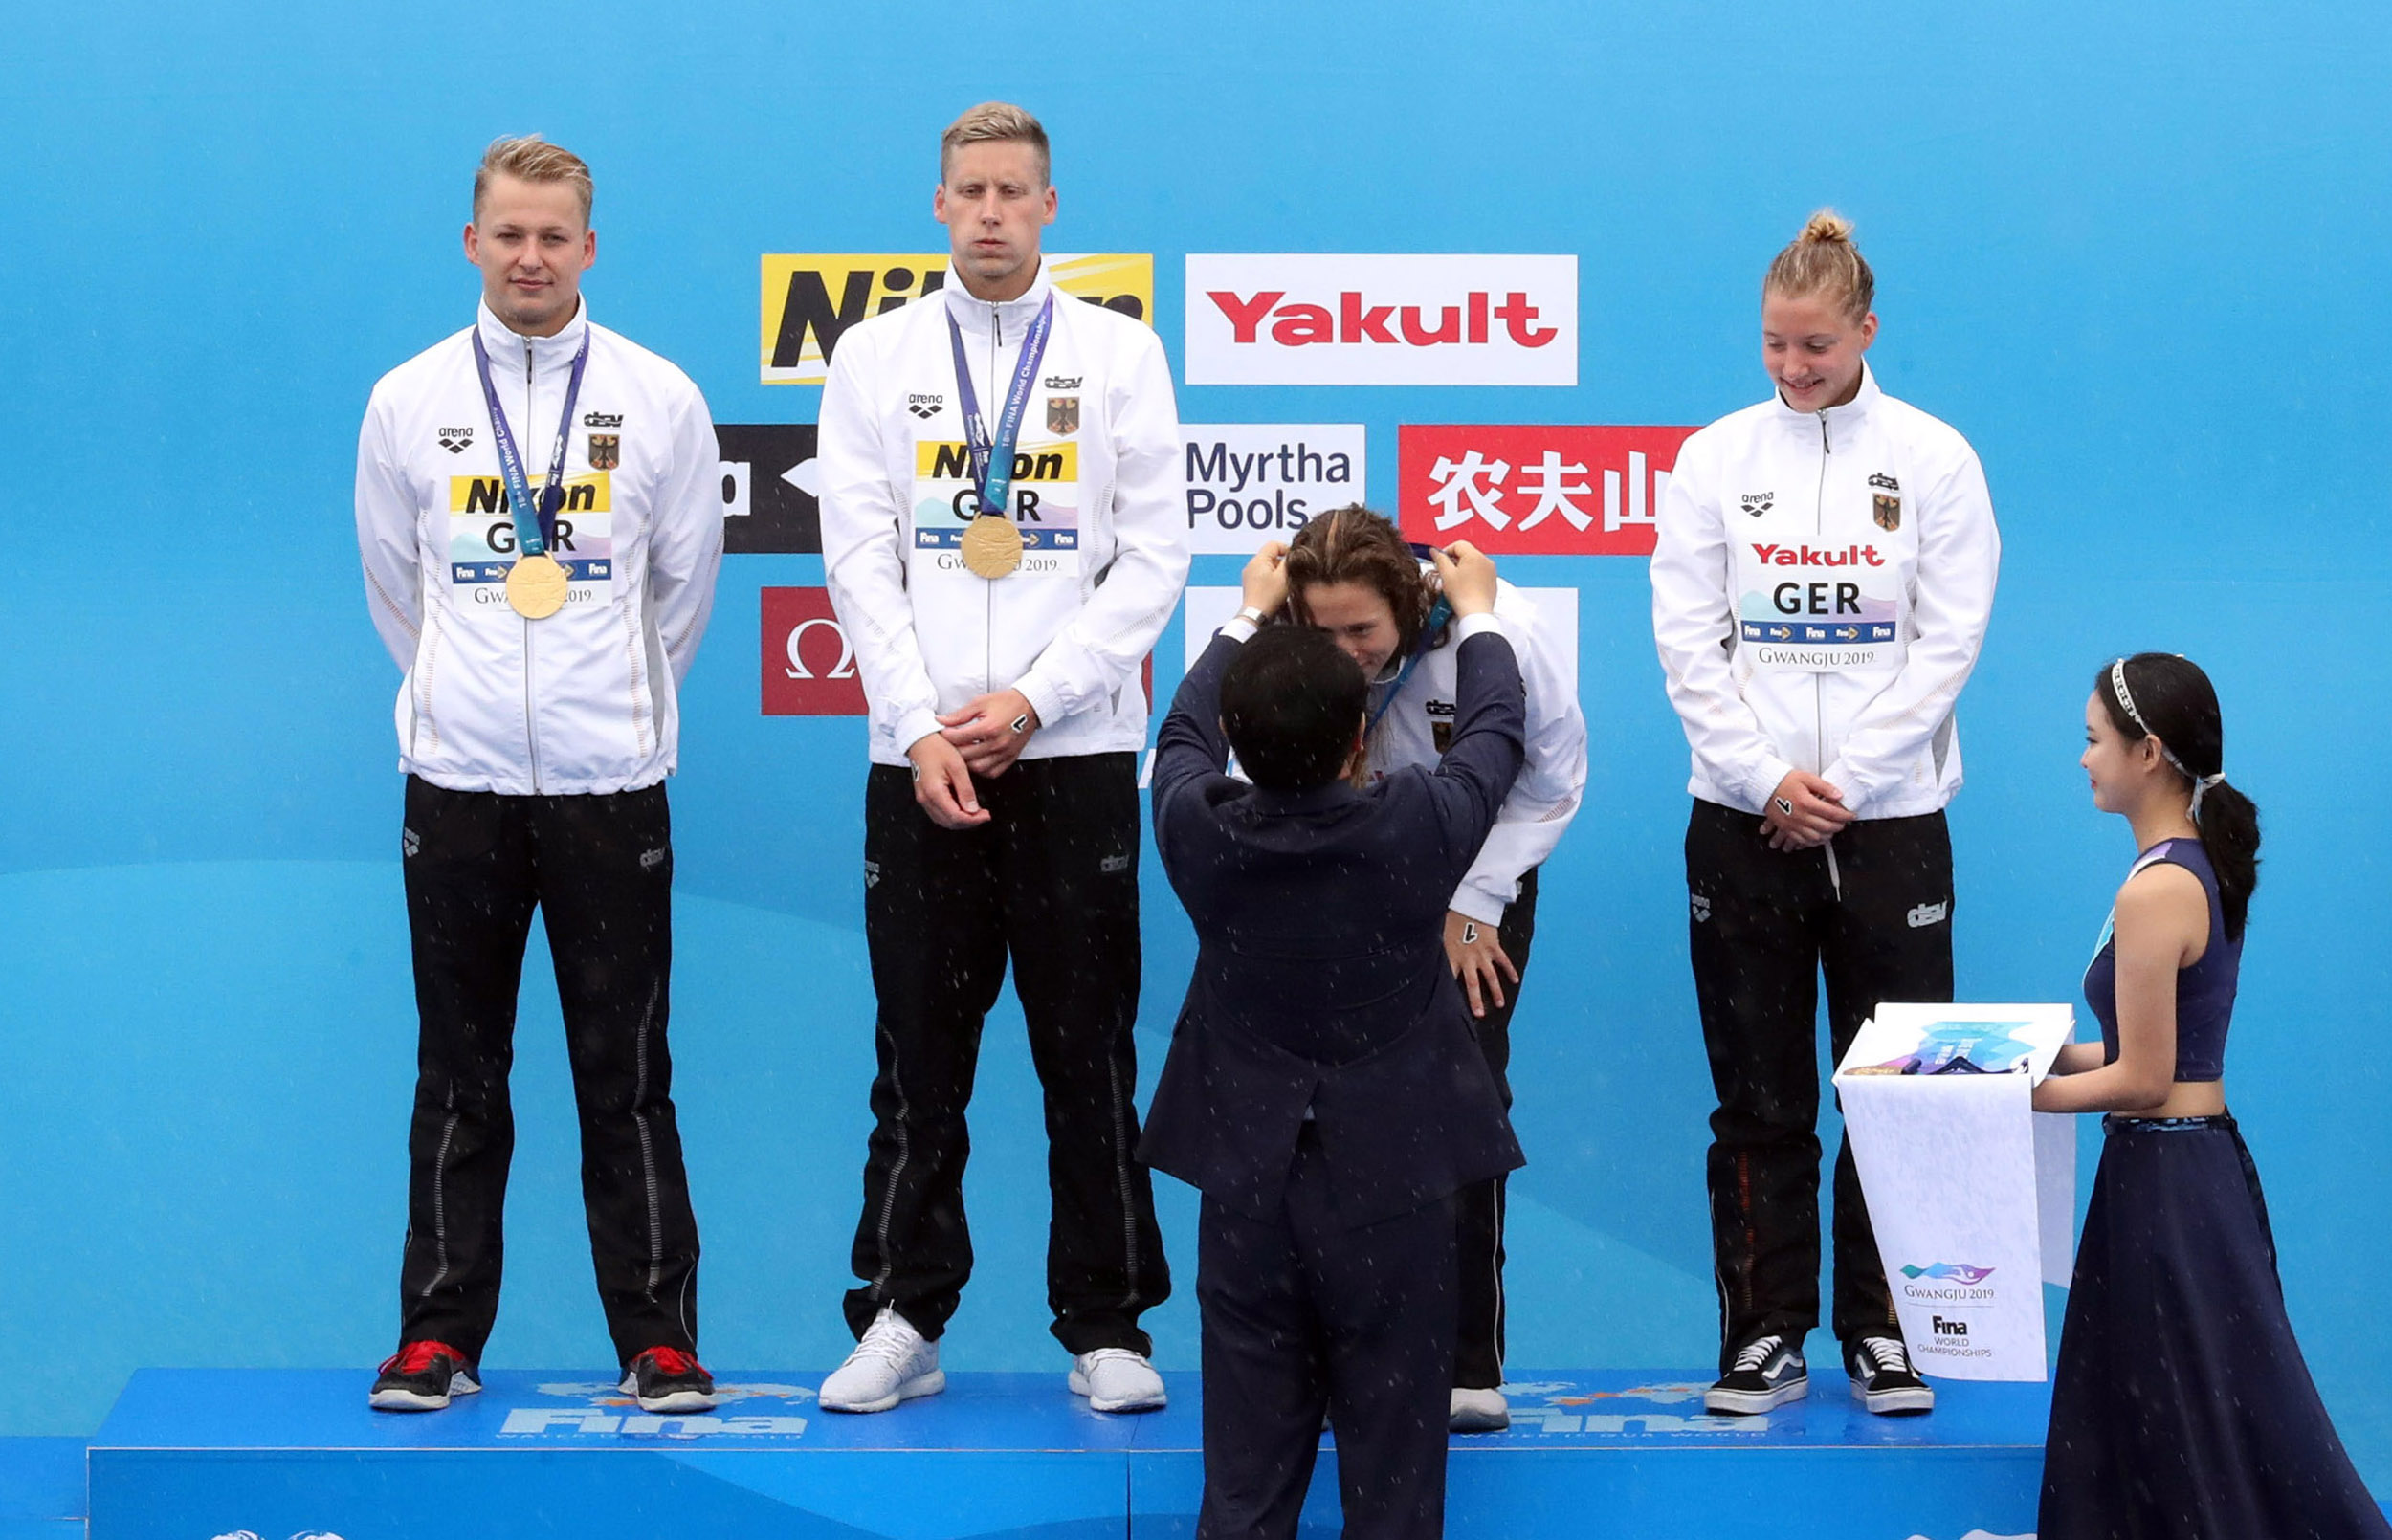 2019광주세계수영선수권대회 오픈워터경기 시상1